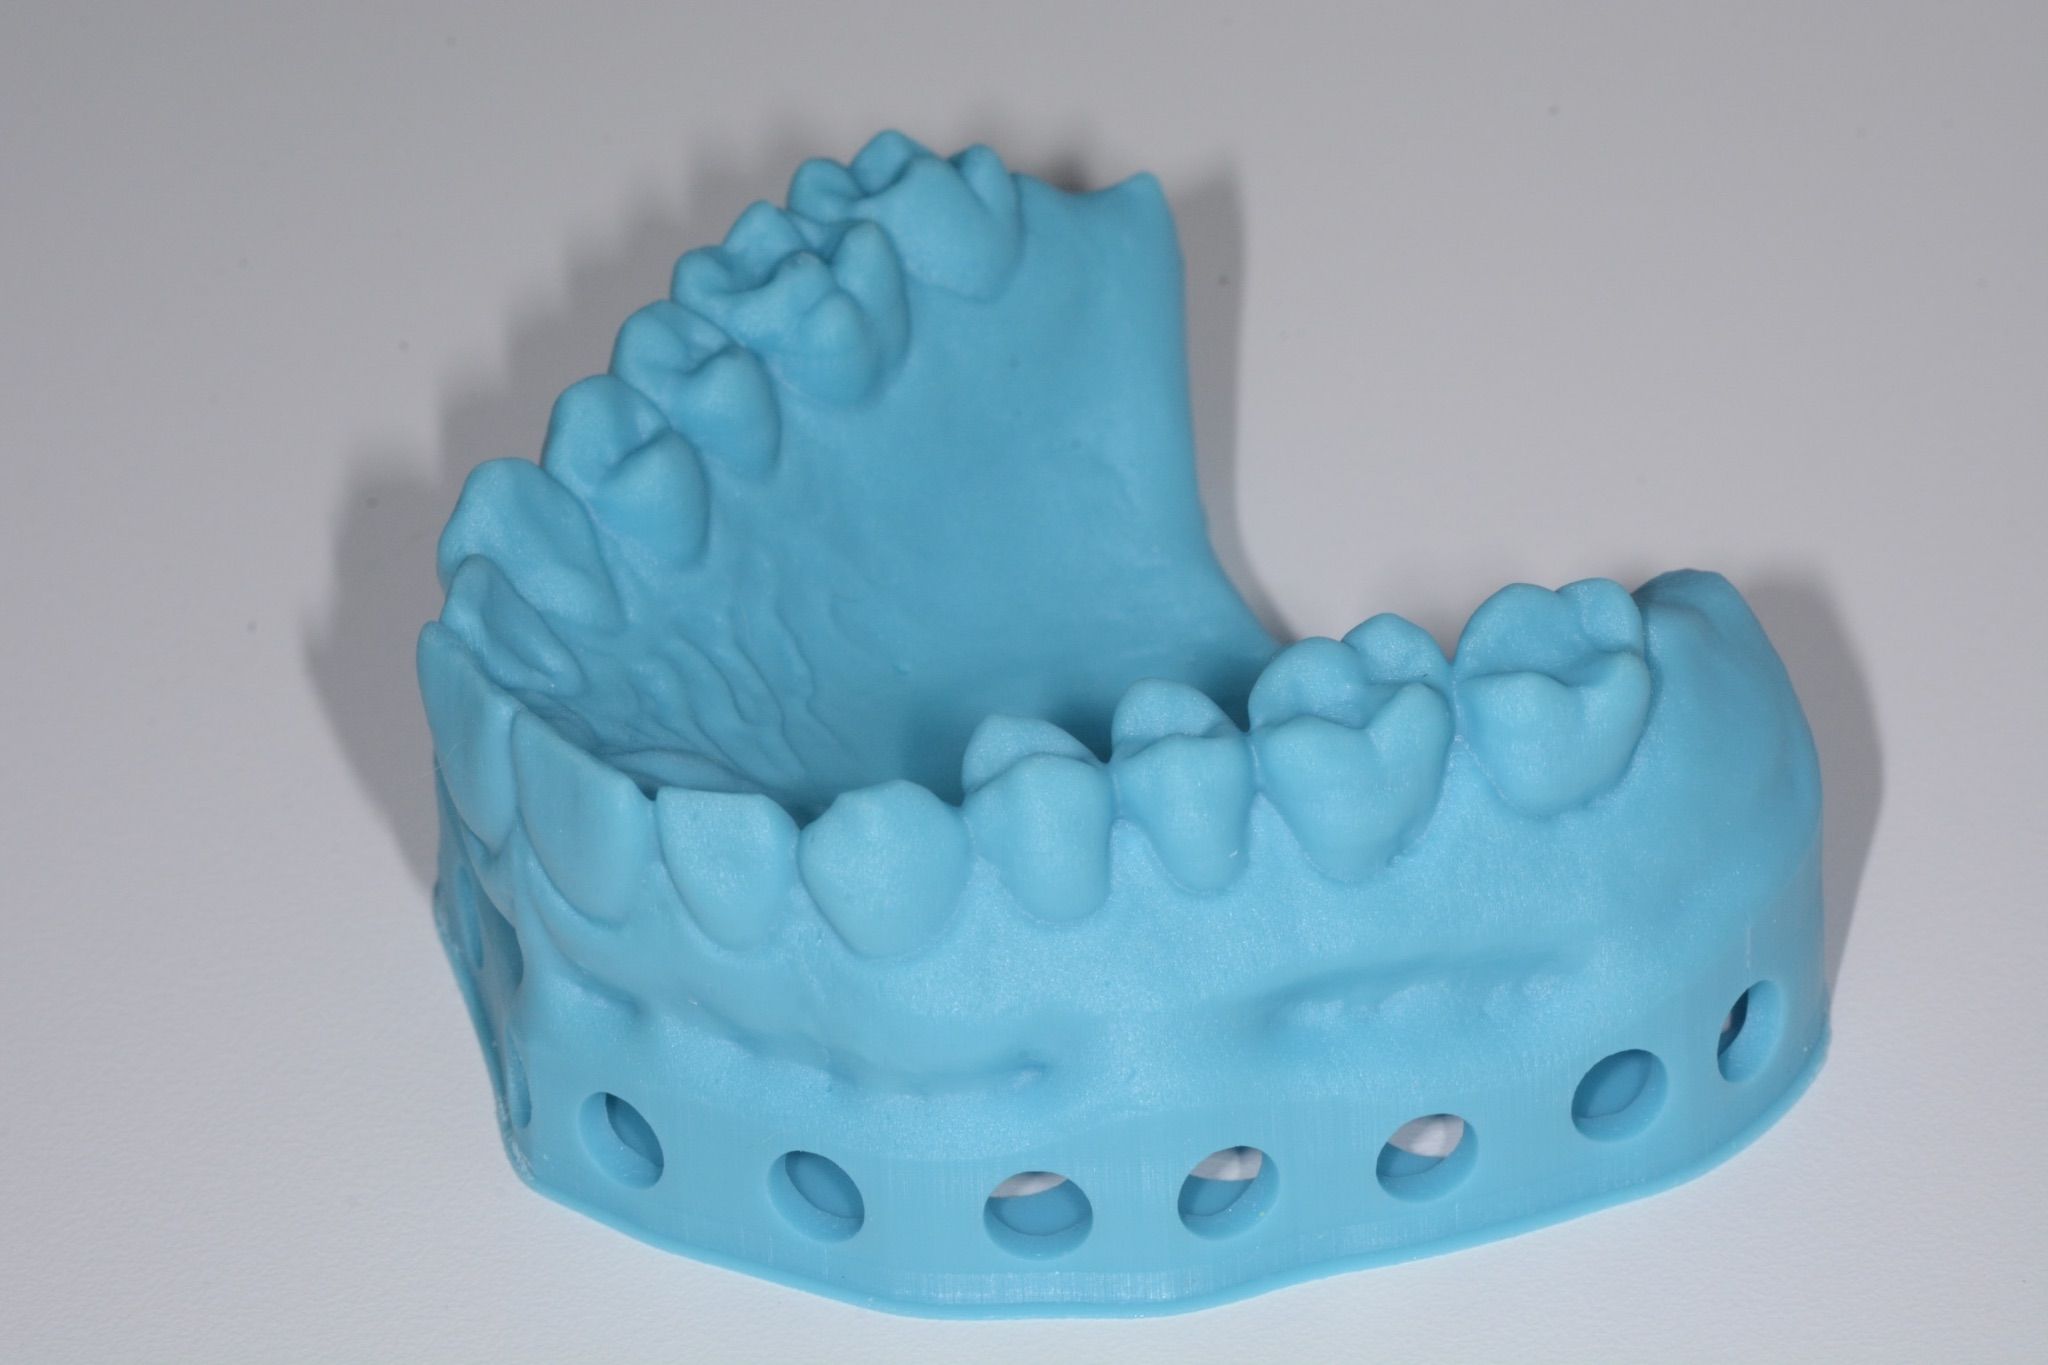 Elegoo Saturn S - Imprimante 3D résine pour le dentaire